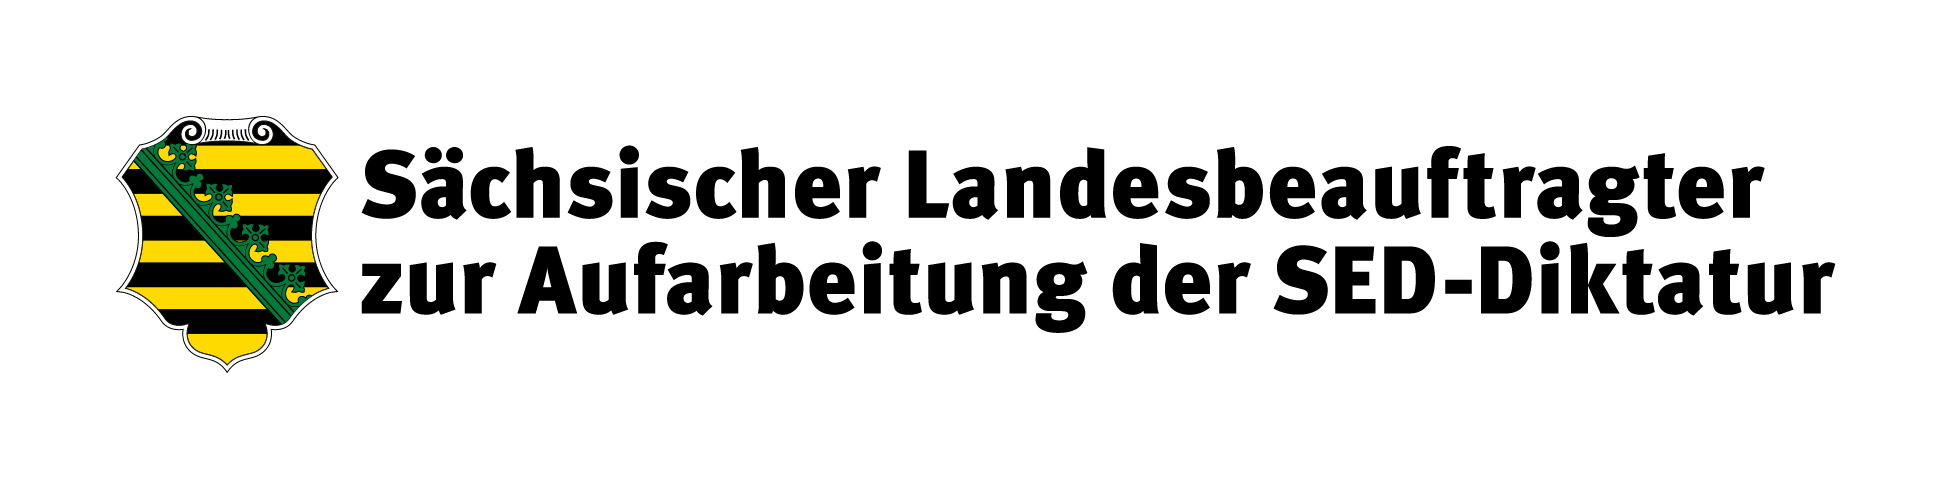 Logo des sächsischen Landesbeauftragten zur Aufarbeitung der SED-Diktatur